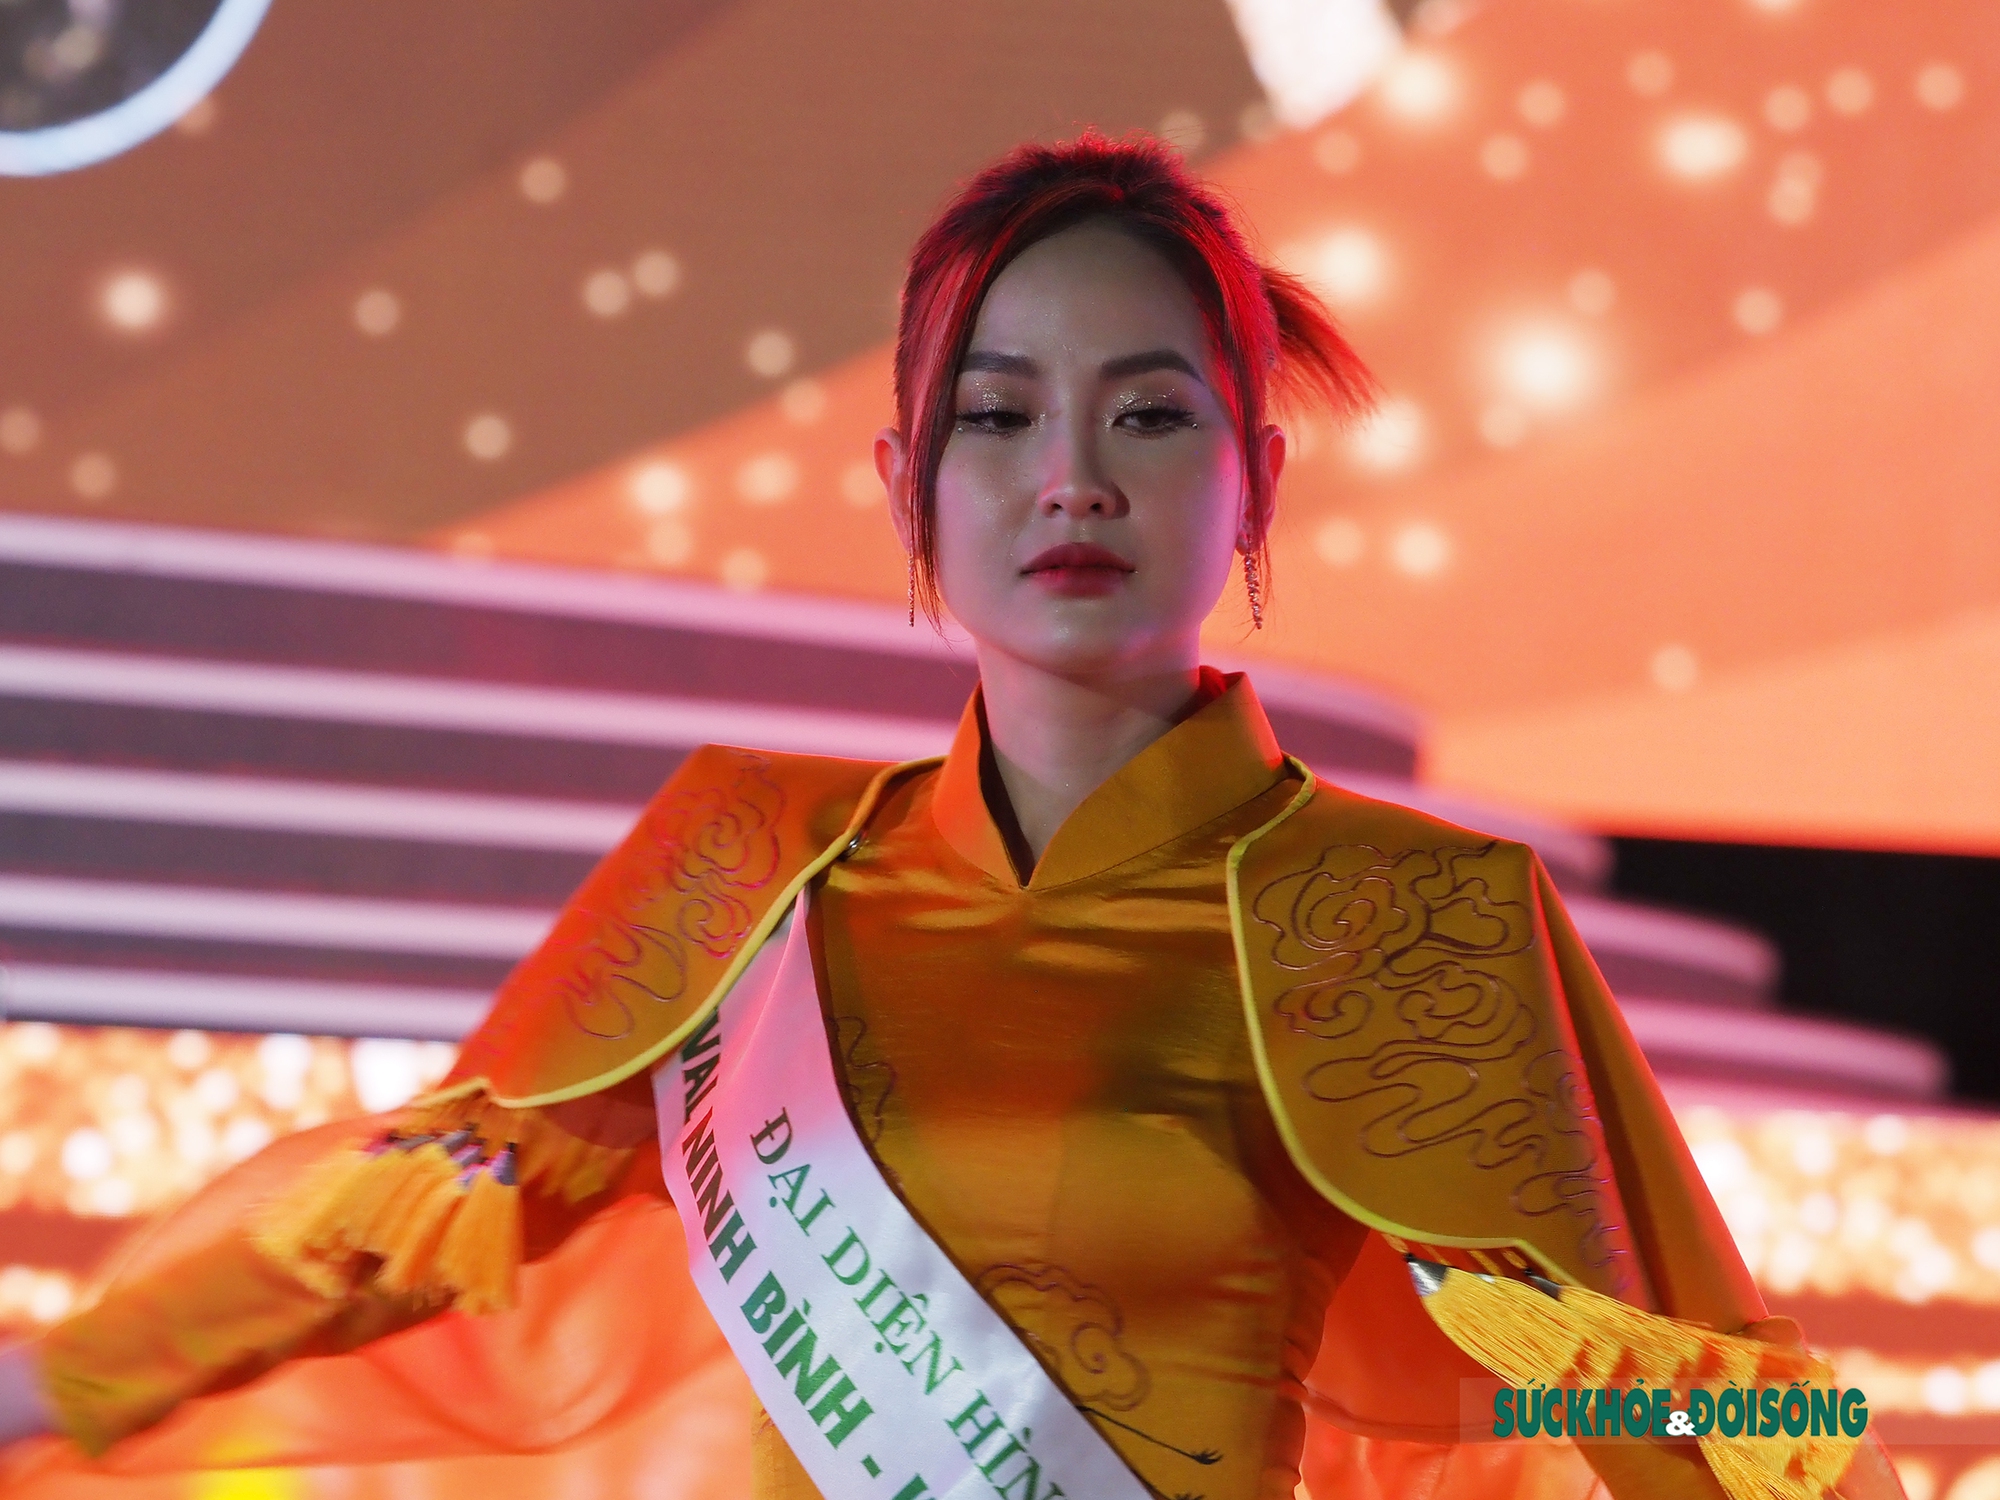 Hoa hậu Du lịch thế giới có mặt trong lễ khai mạc Festival Ninh Binh 2022 - Ảnh 5.